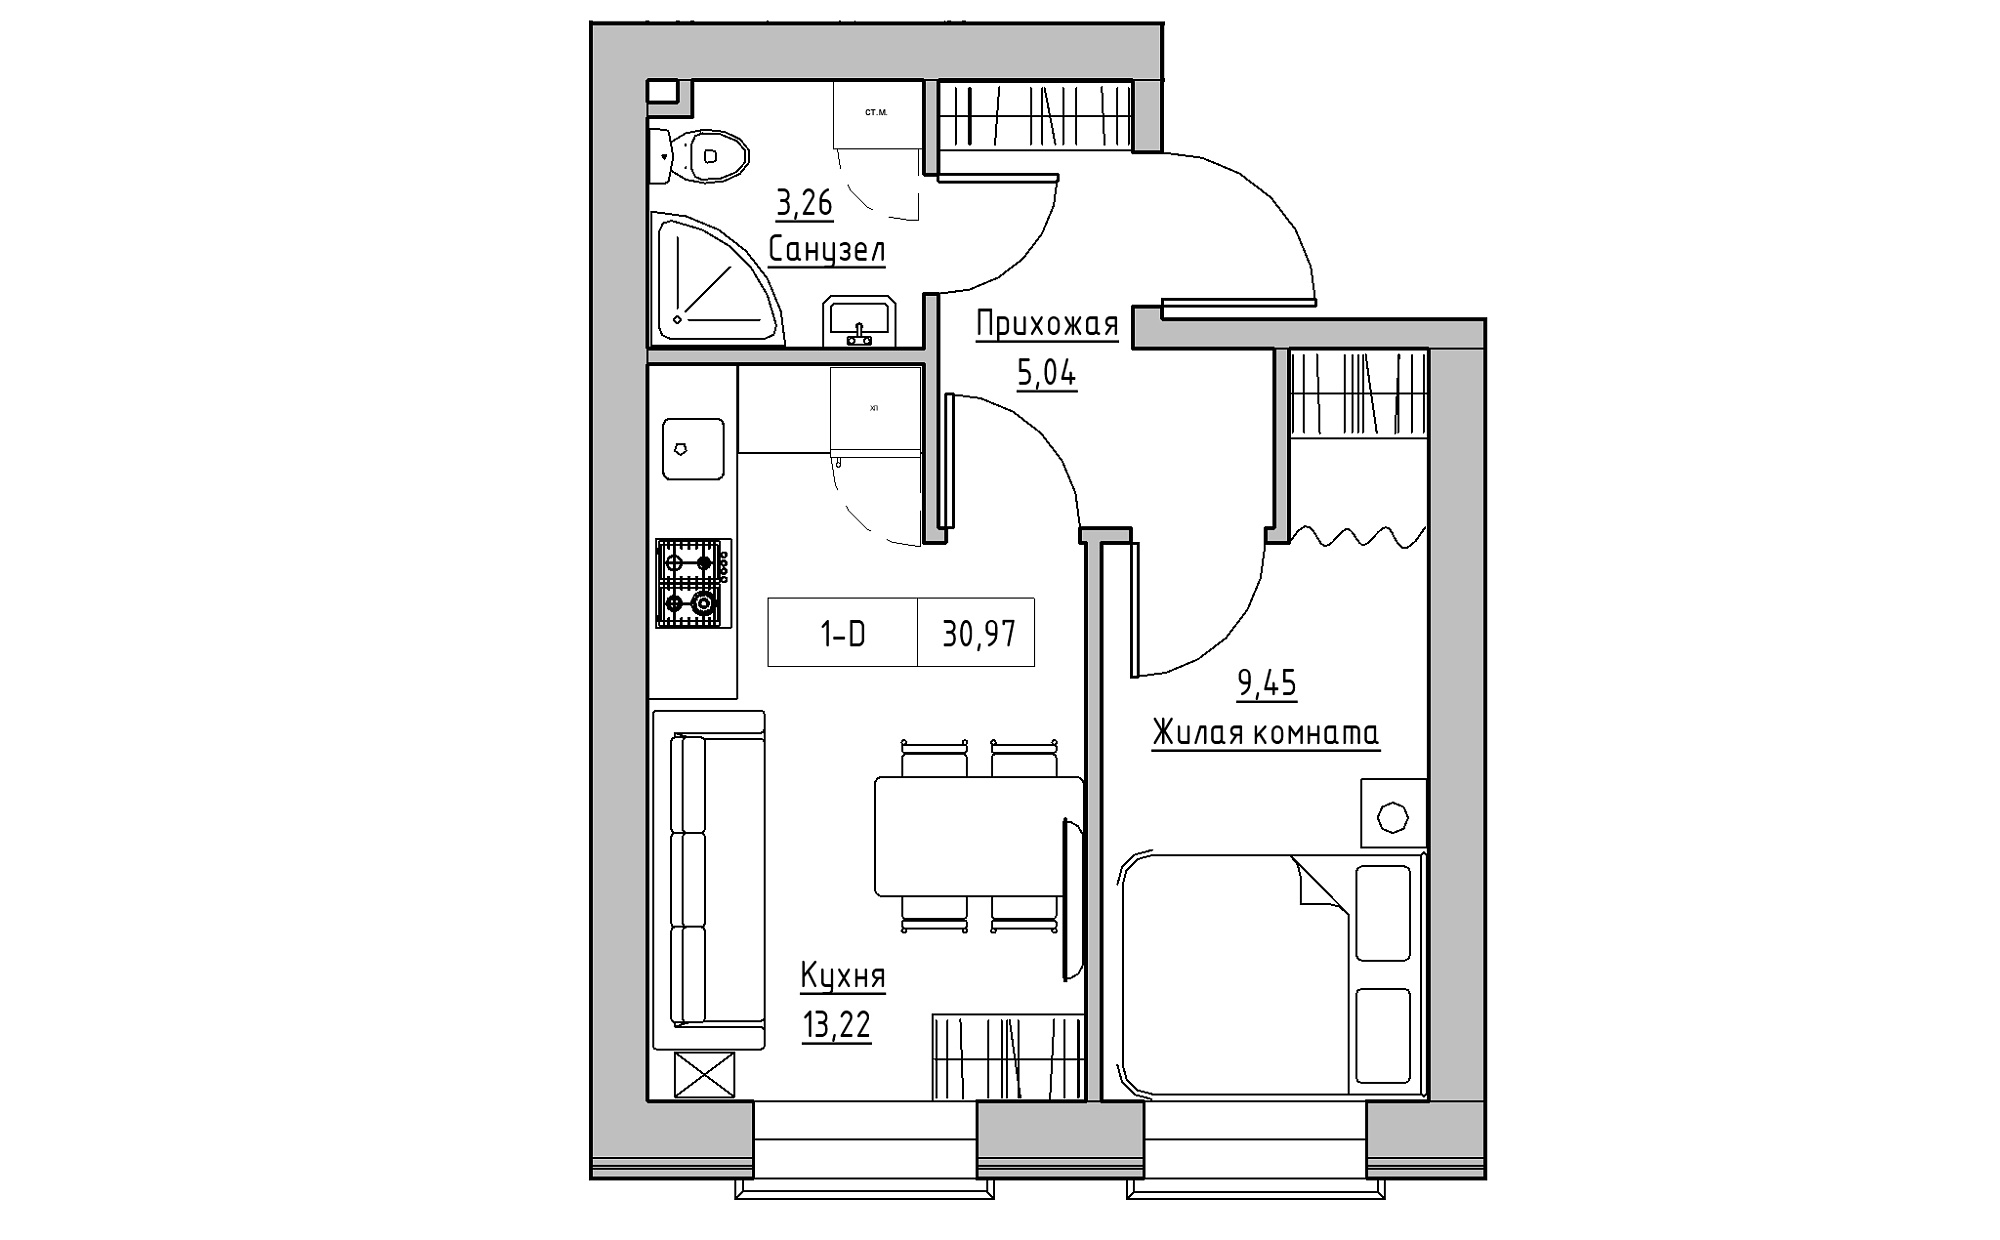 Планування 1-к квартира площею 30.97м2, KS-022-01/0003.